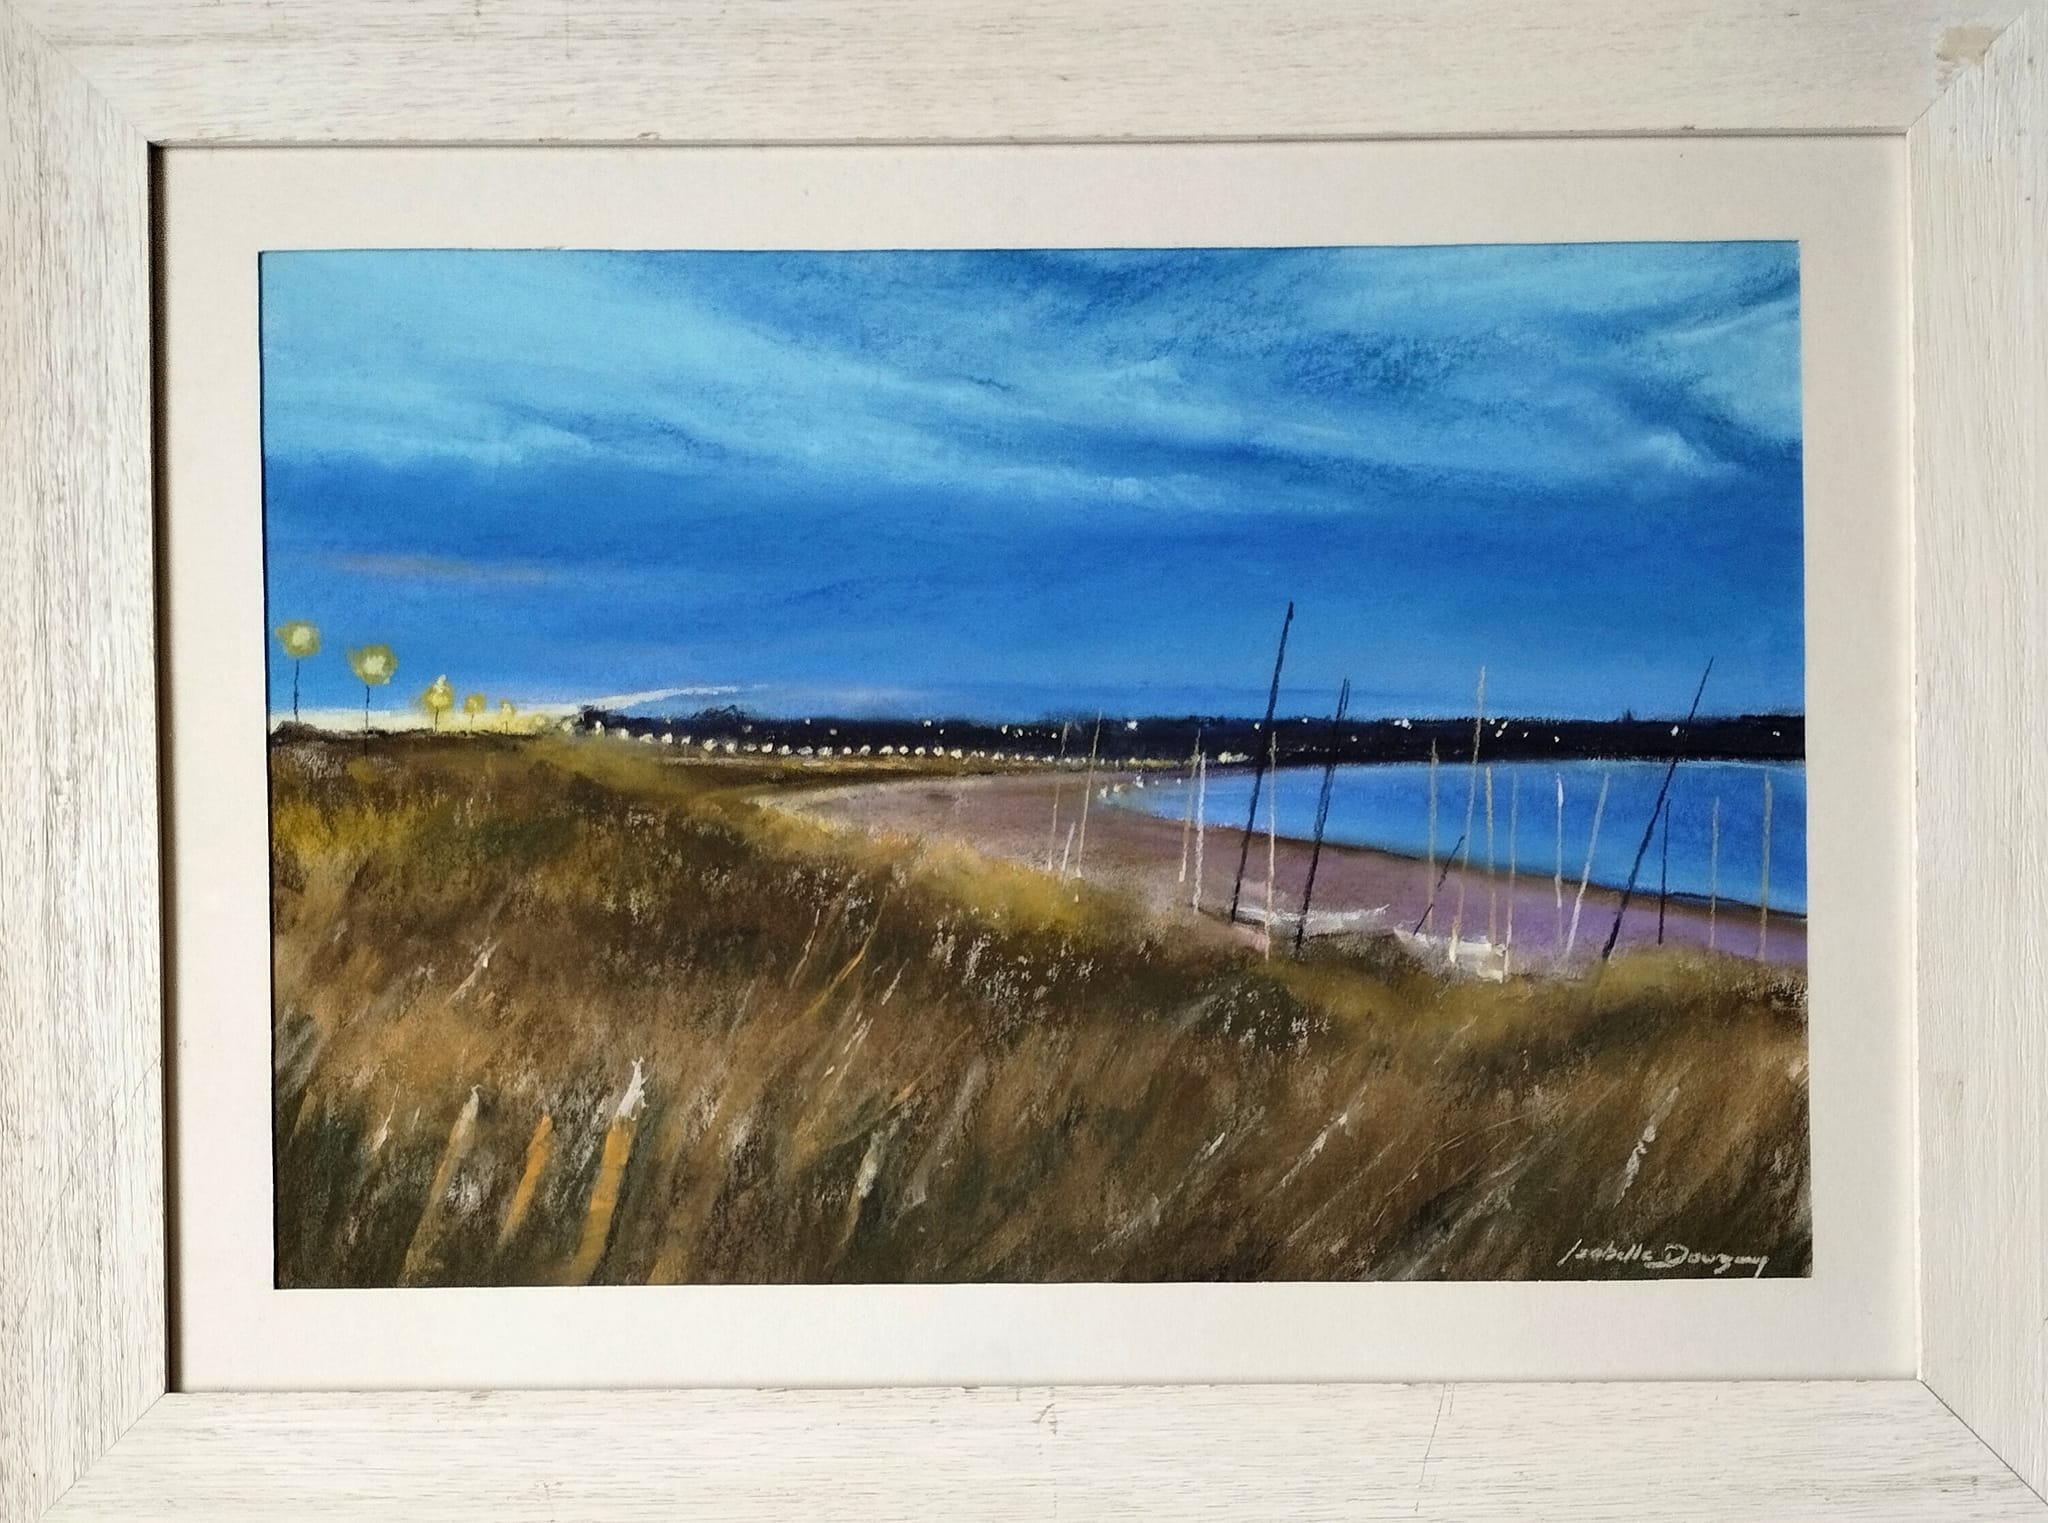 Ambiance d 'un soir à la grande plage de Saint-Cast-Le-Guildo - Peinture au pastel sec par l'artiste peintre Isabelle Douzamy - 62 x 82 cm (encadré)